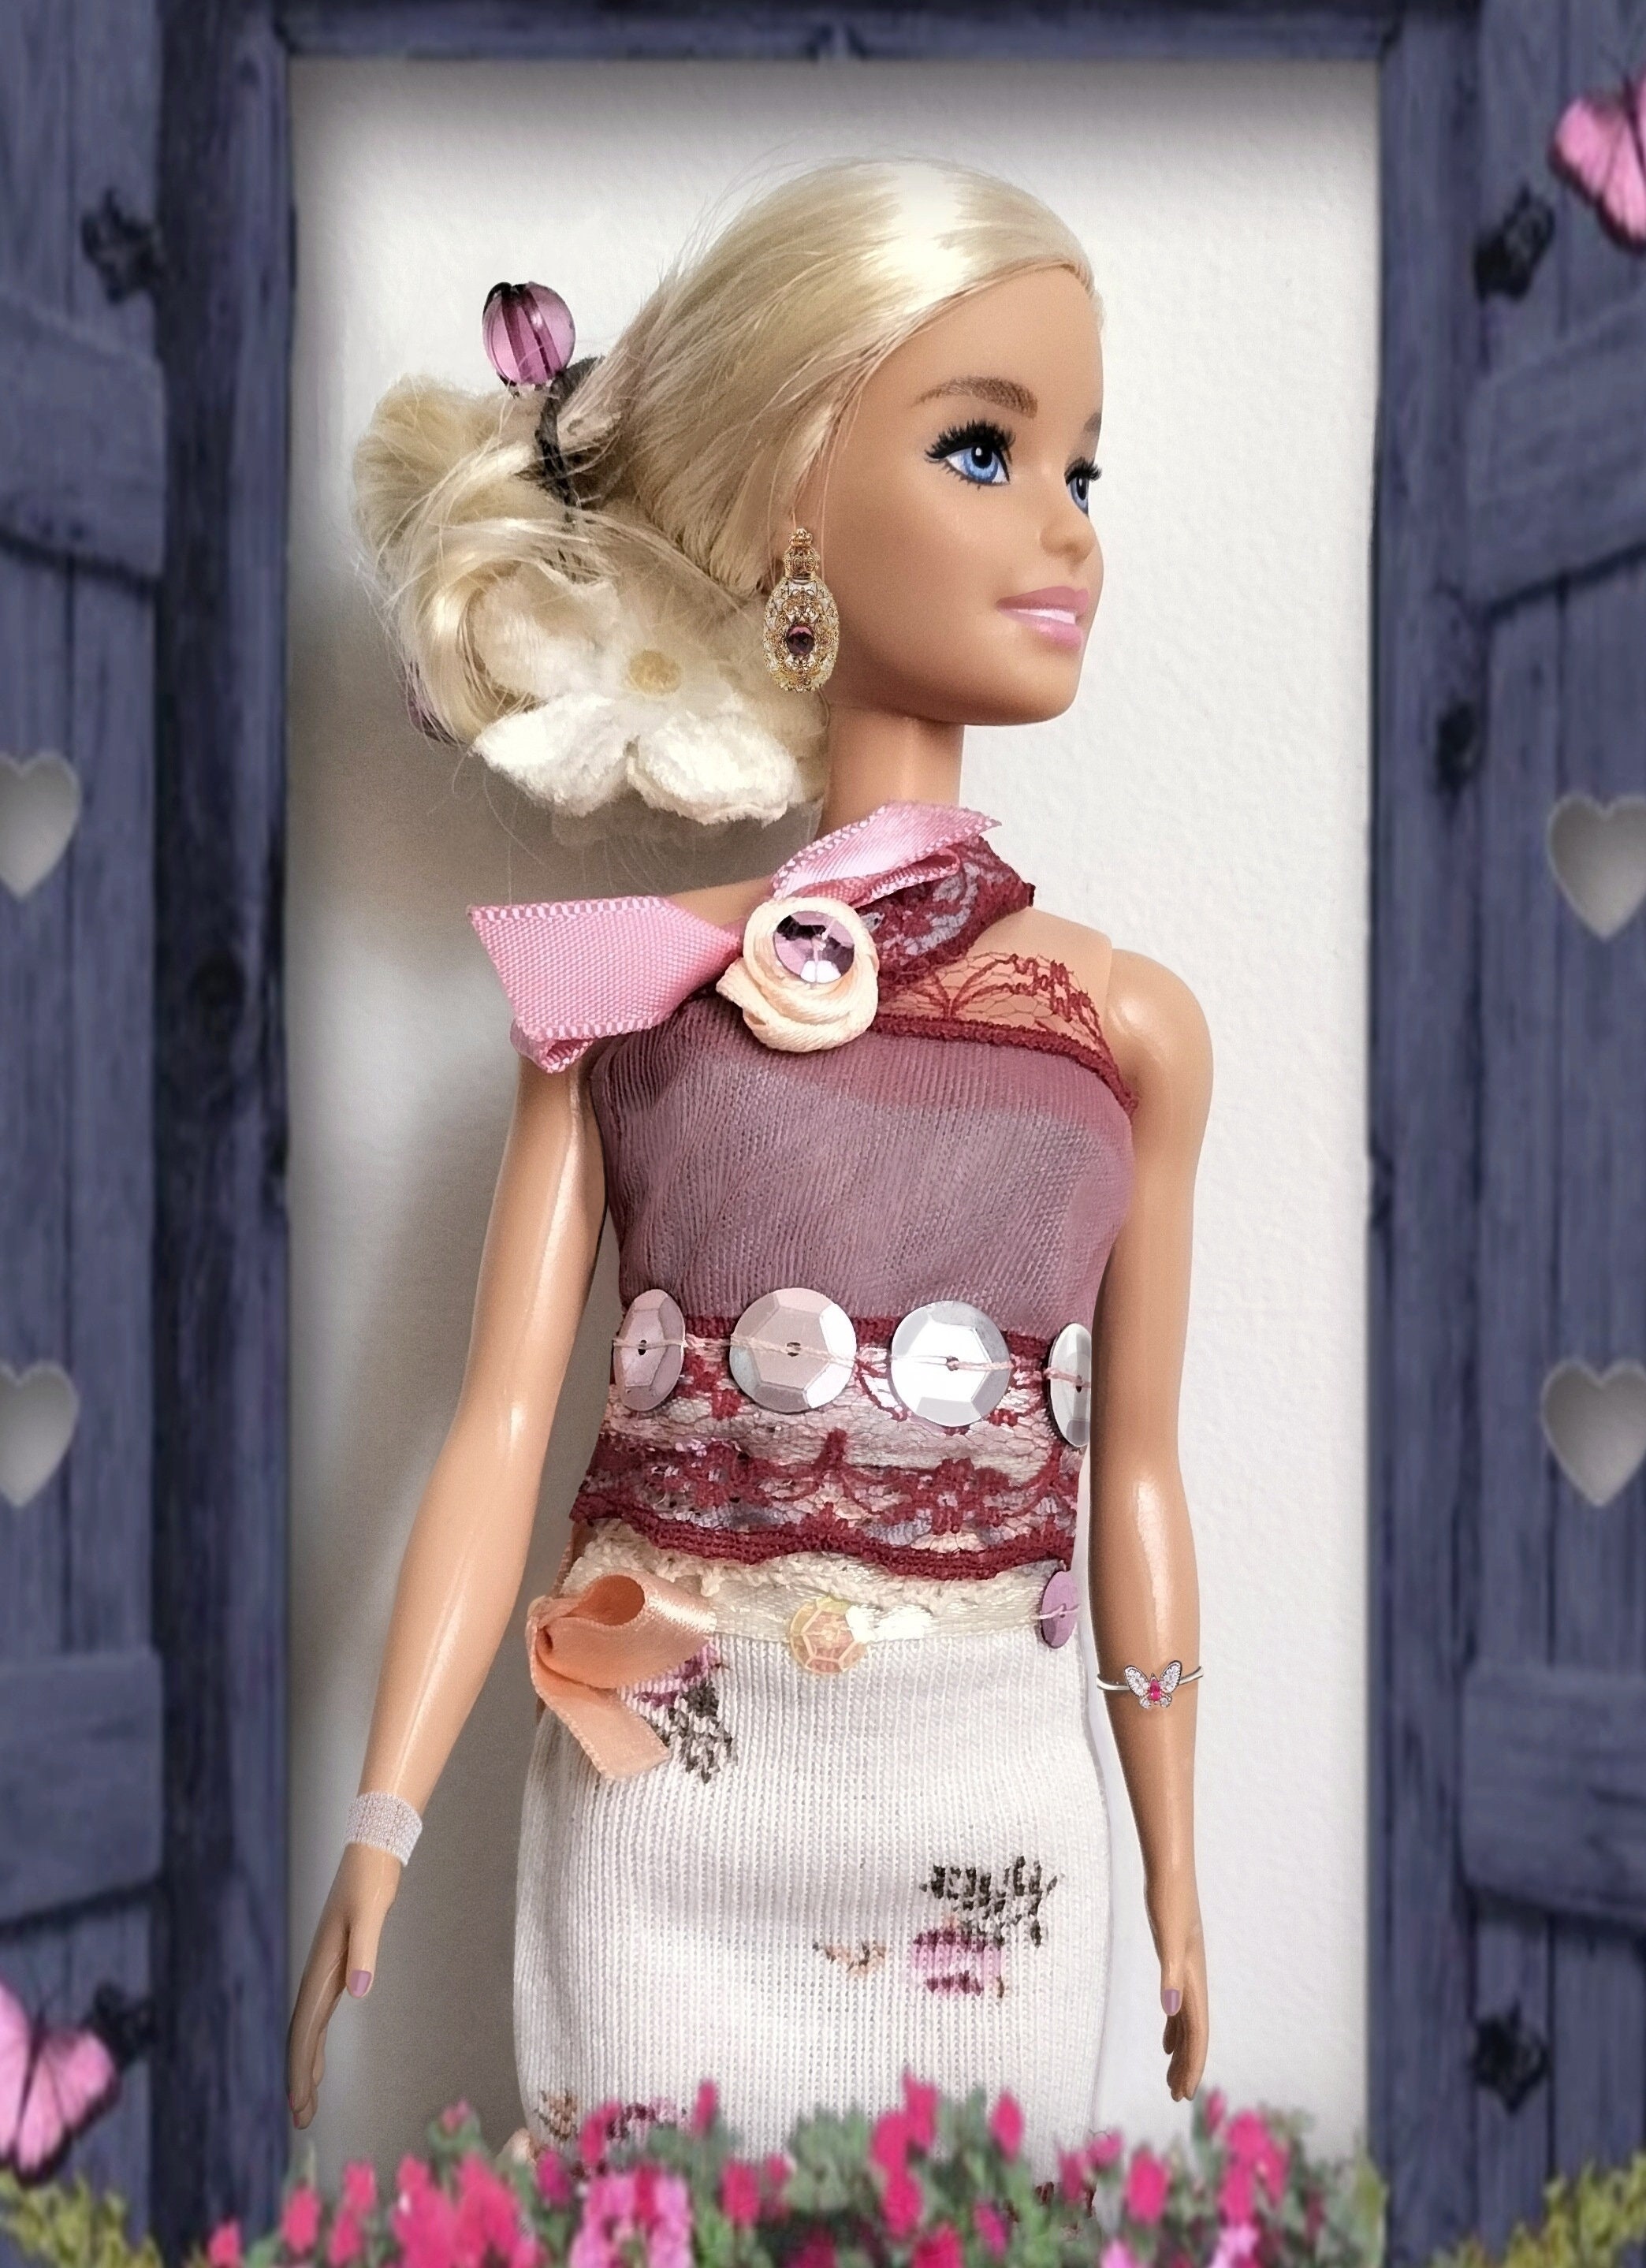 pyjama Arc en ciel vêtement de nuit pour poupée barbie, Barbie  fashionistas par Violette créations